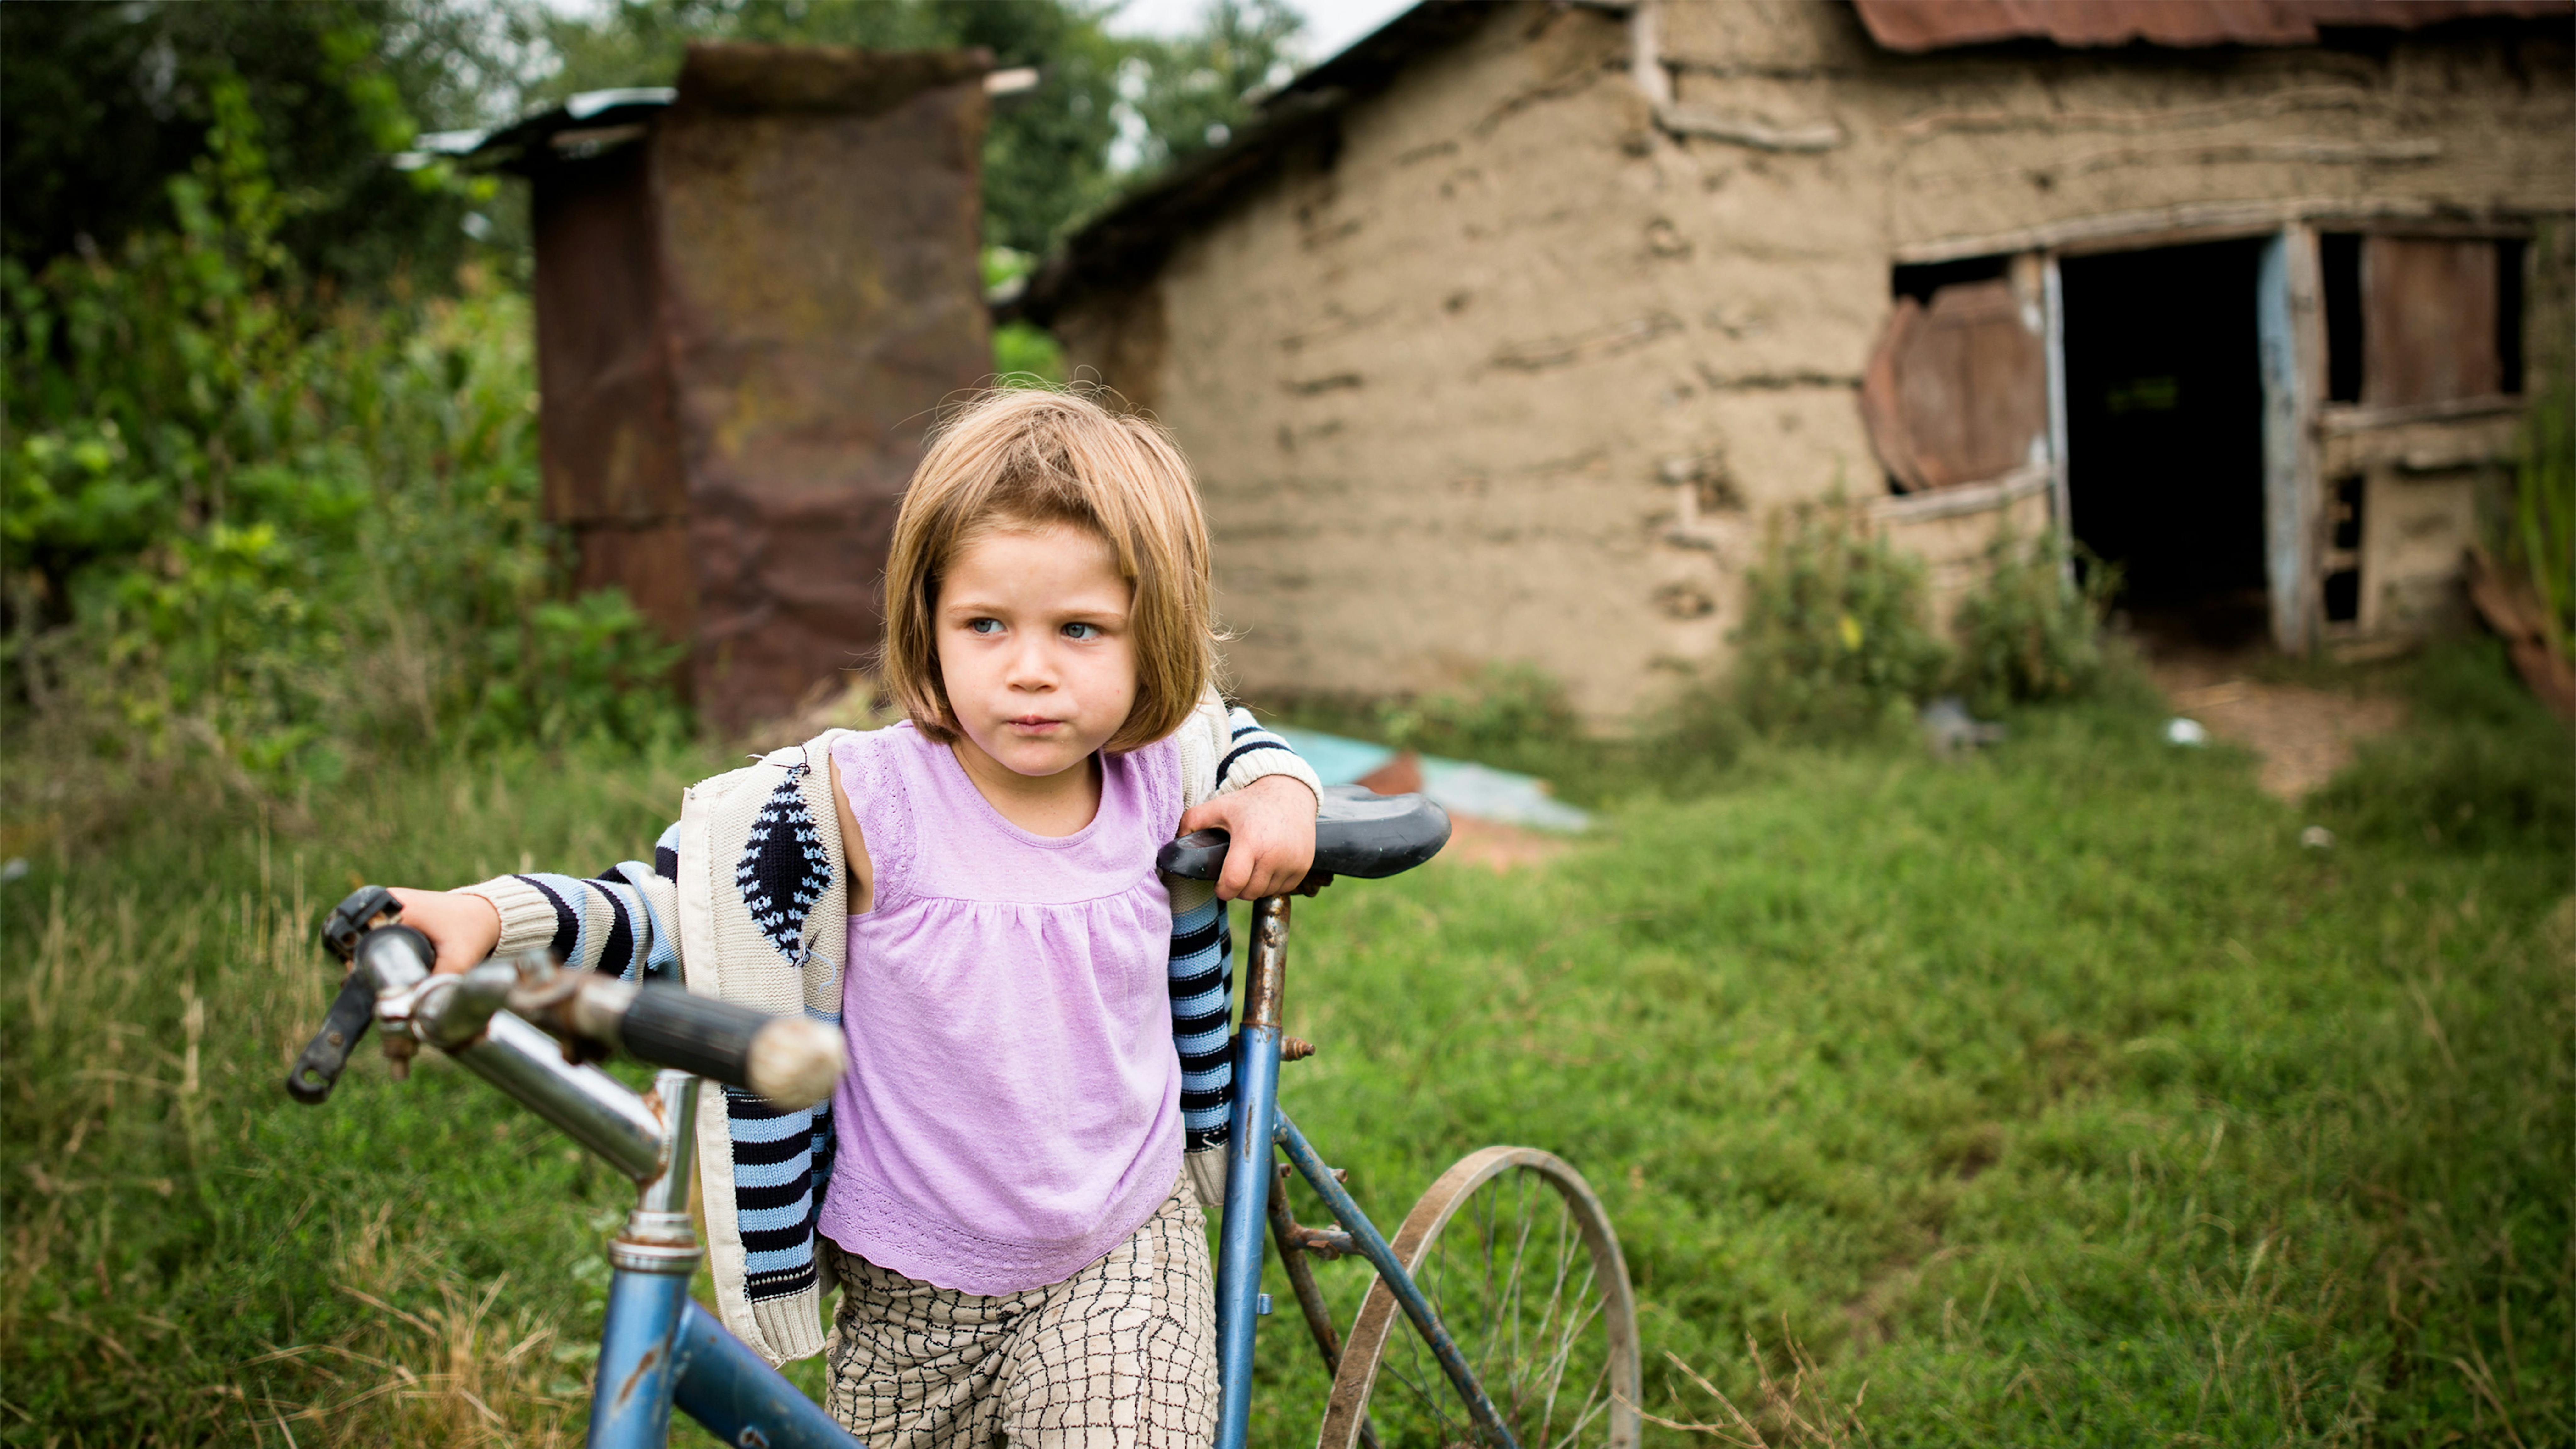 Romania - Flori Maria ha 4 anni. È una delle figlie della famiglia Buiacu. La madre sta a casa con i suoi figli e il padre è un pastore